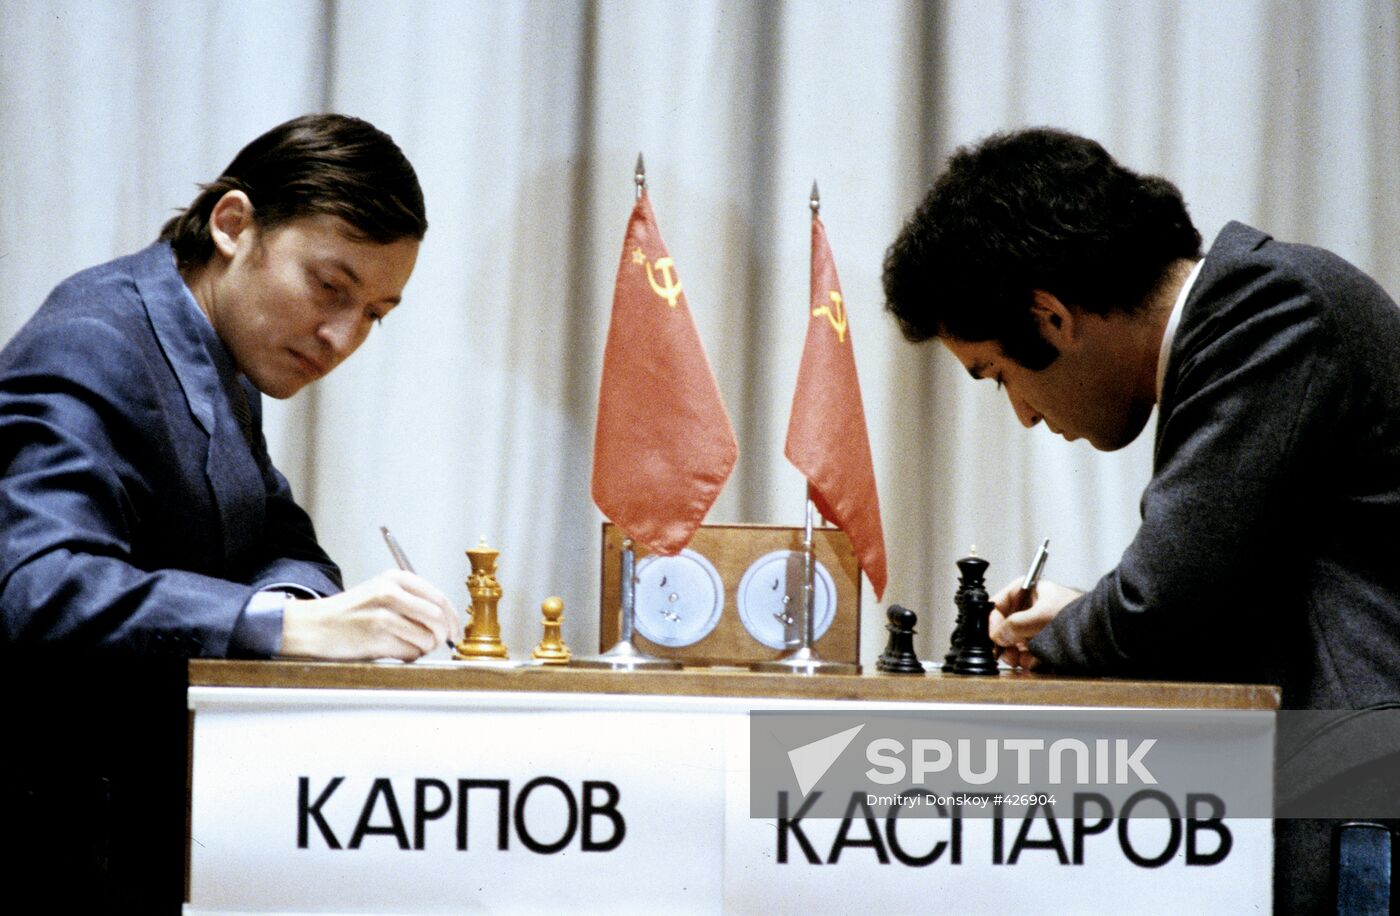 Anatoly Karpov, Garri Kasparov